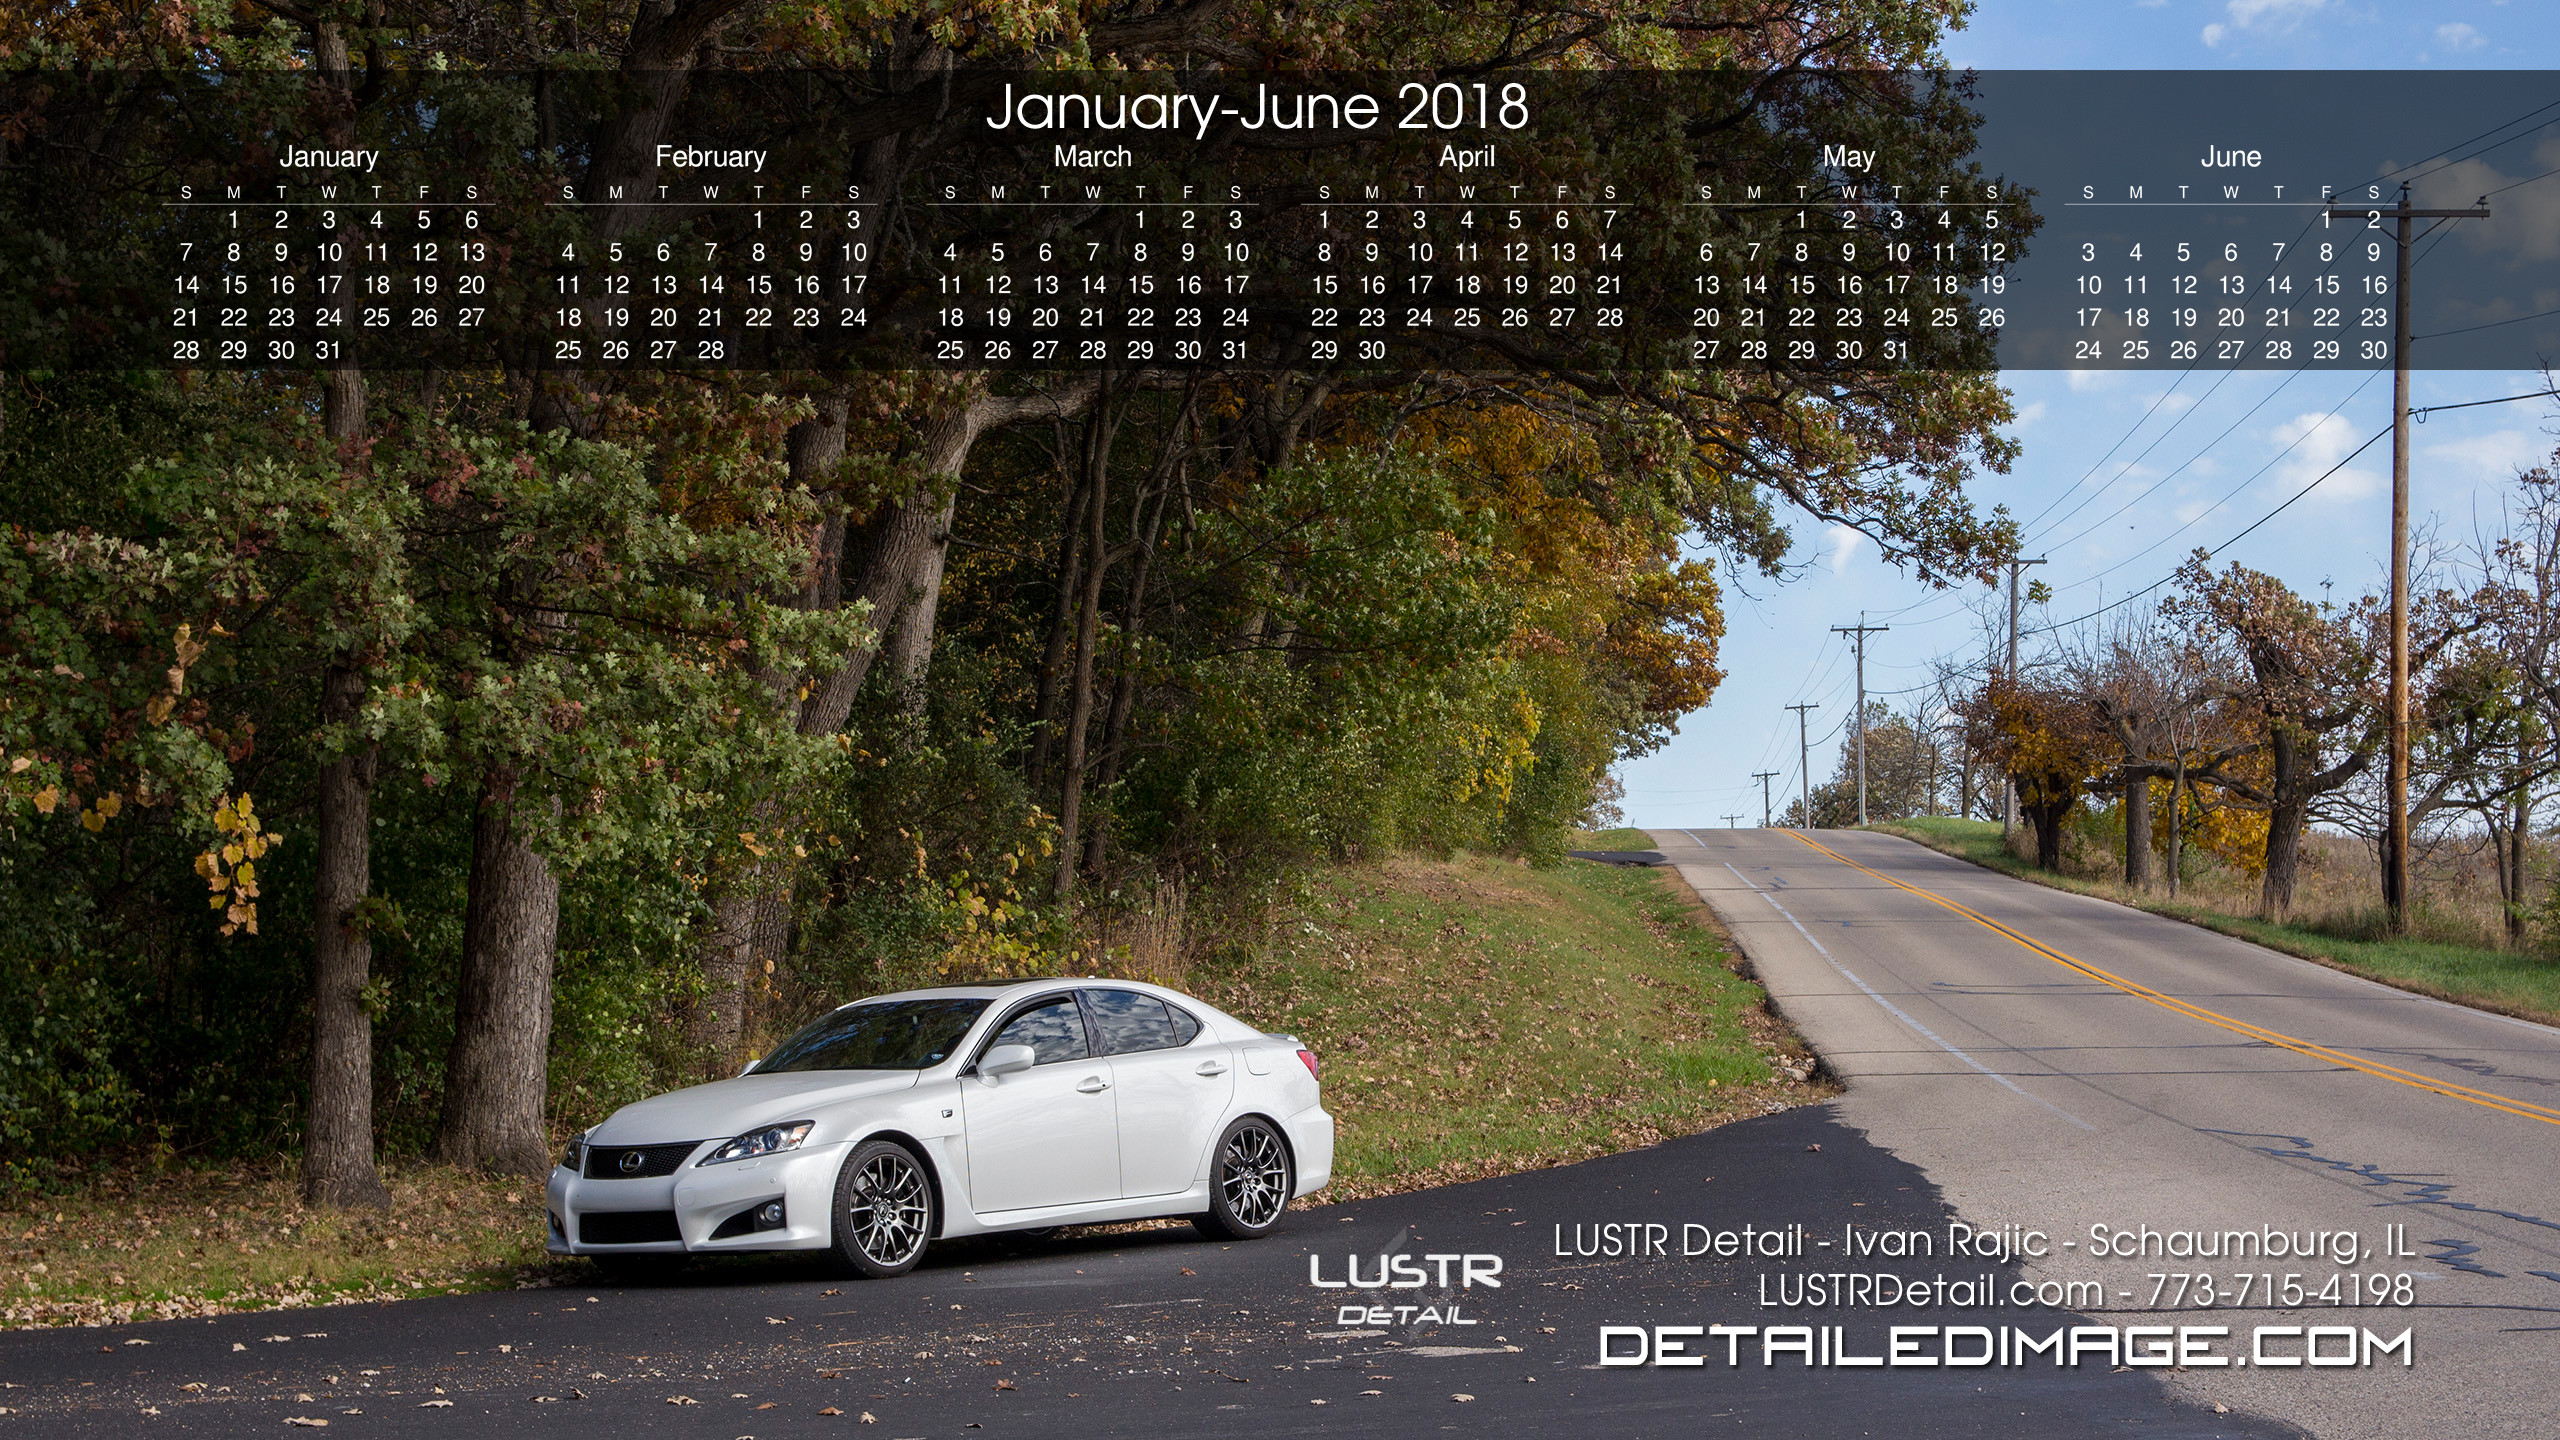 2560x1440 January - June 2018. Download Calendar | Download Wallpaper